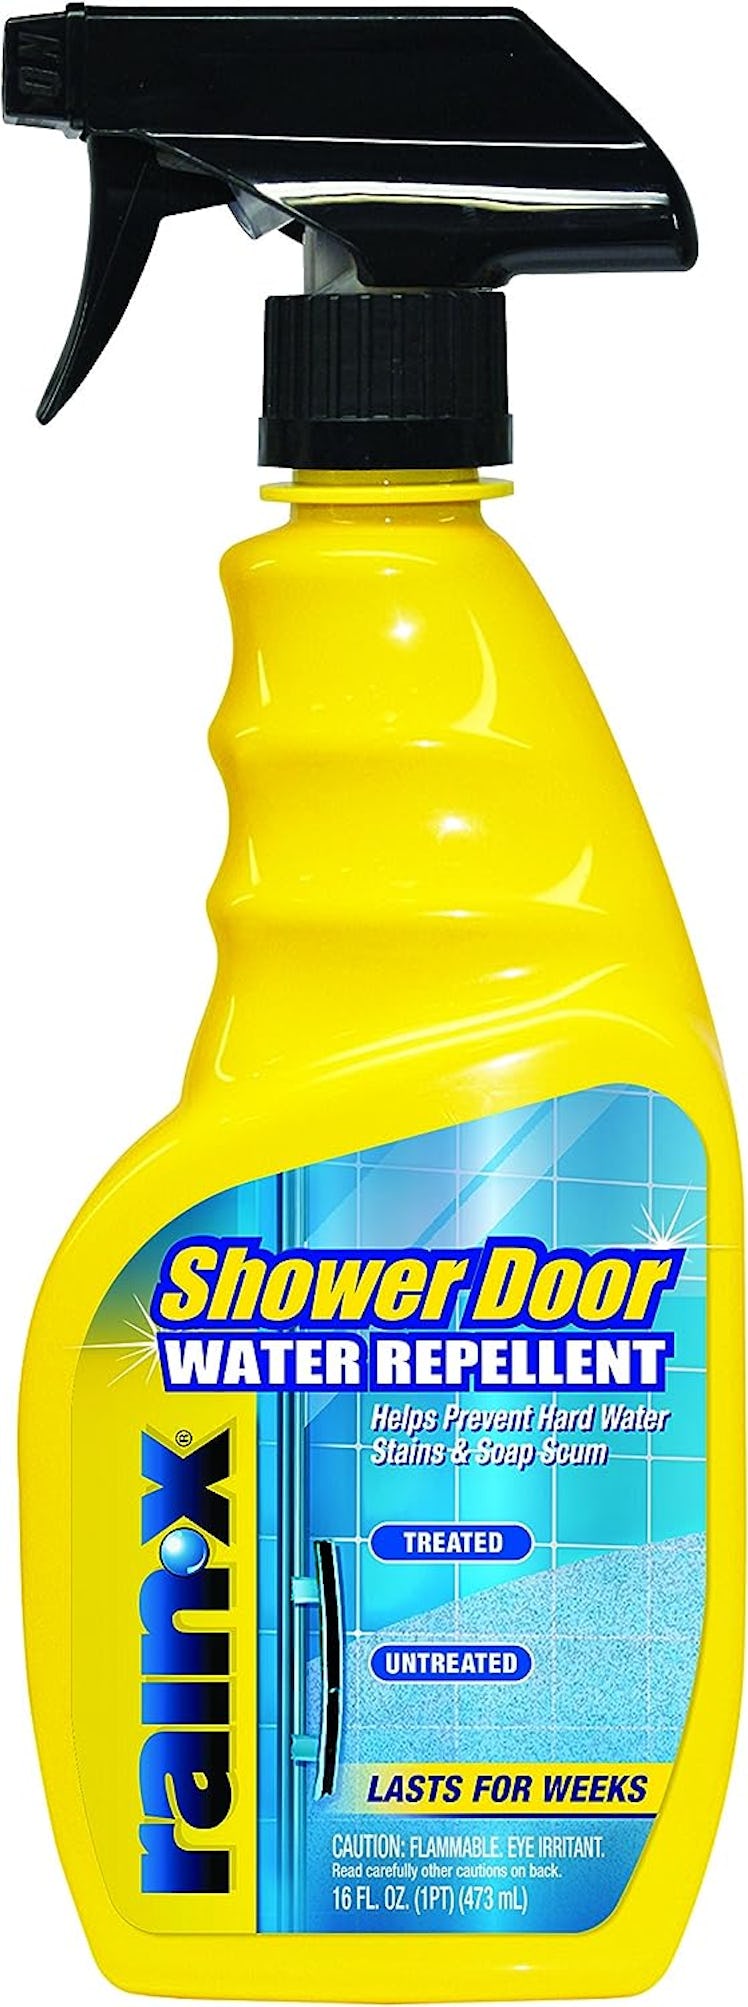 Rain-X Shower Door Water Repeller